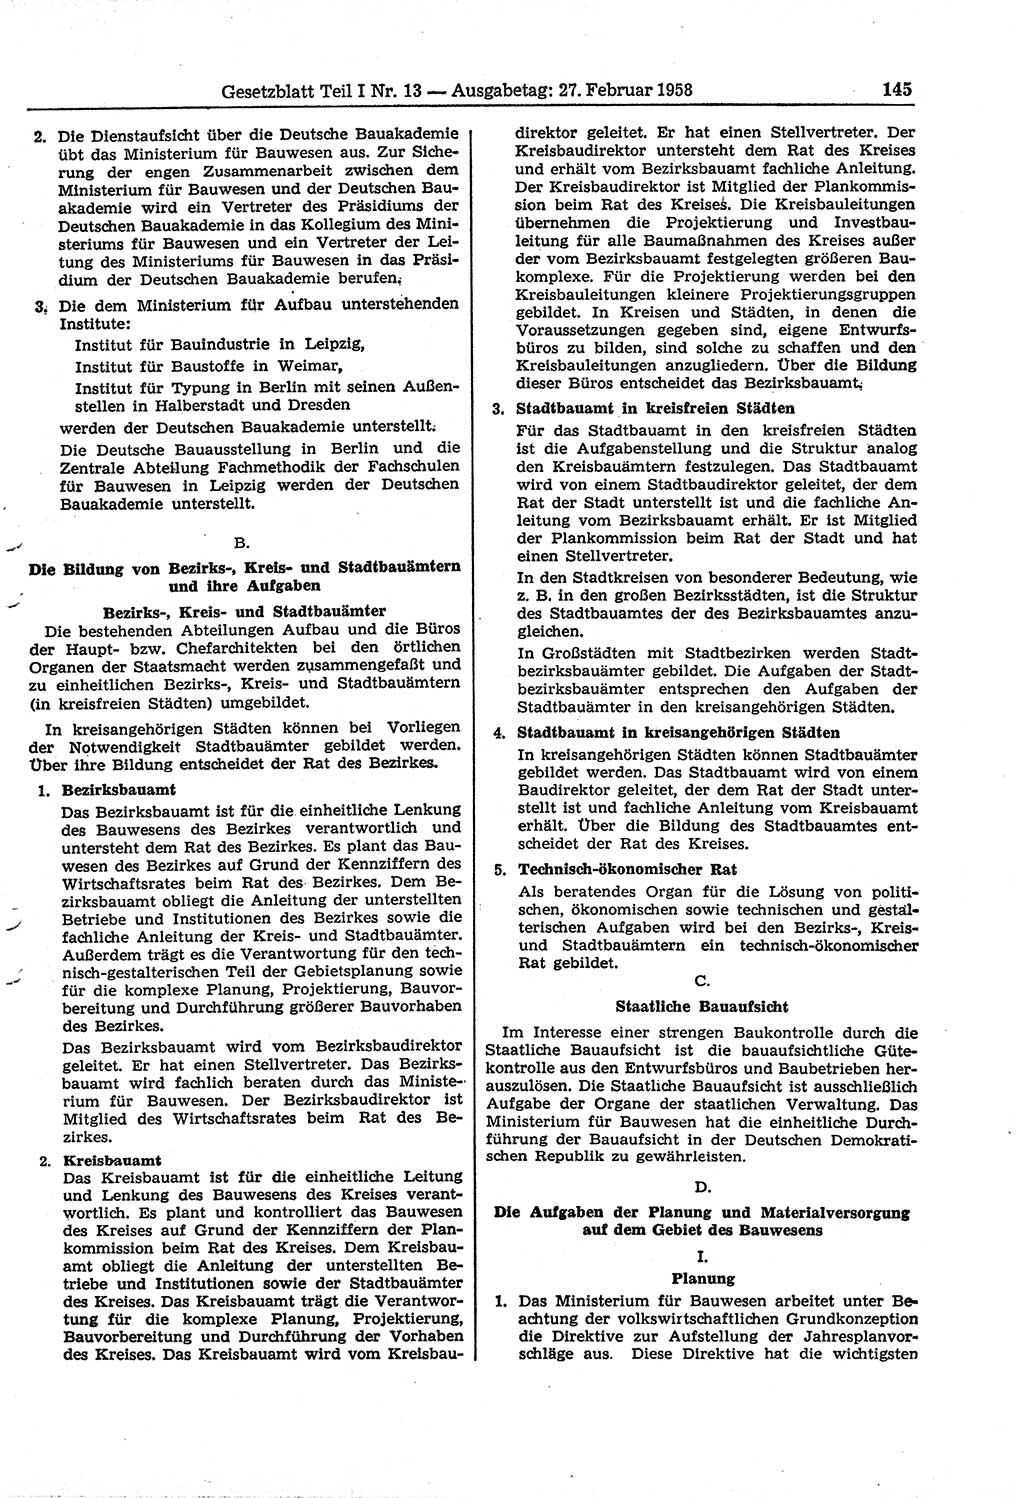 Gesetzblatt (GBl.) der Deutschen Demokratischen Republik (DDR) Teil Ⅰ 1958, Seite 145 (GBl. DDR Ⅰ 1958, S. 145)